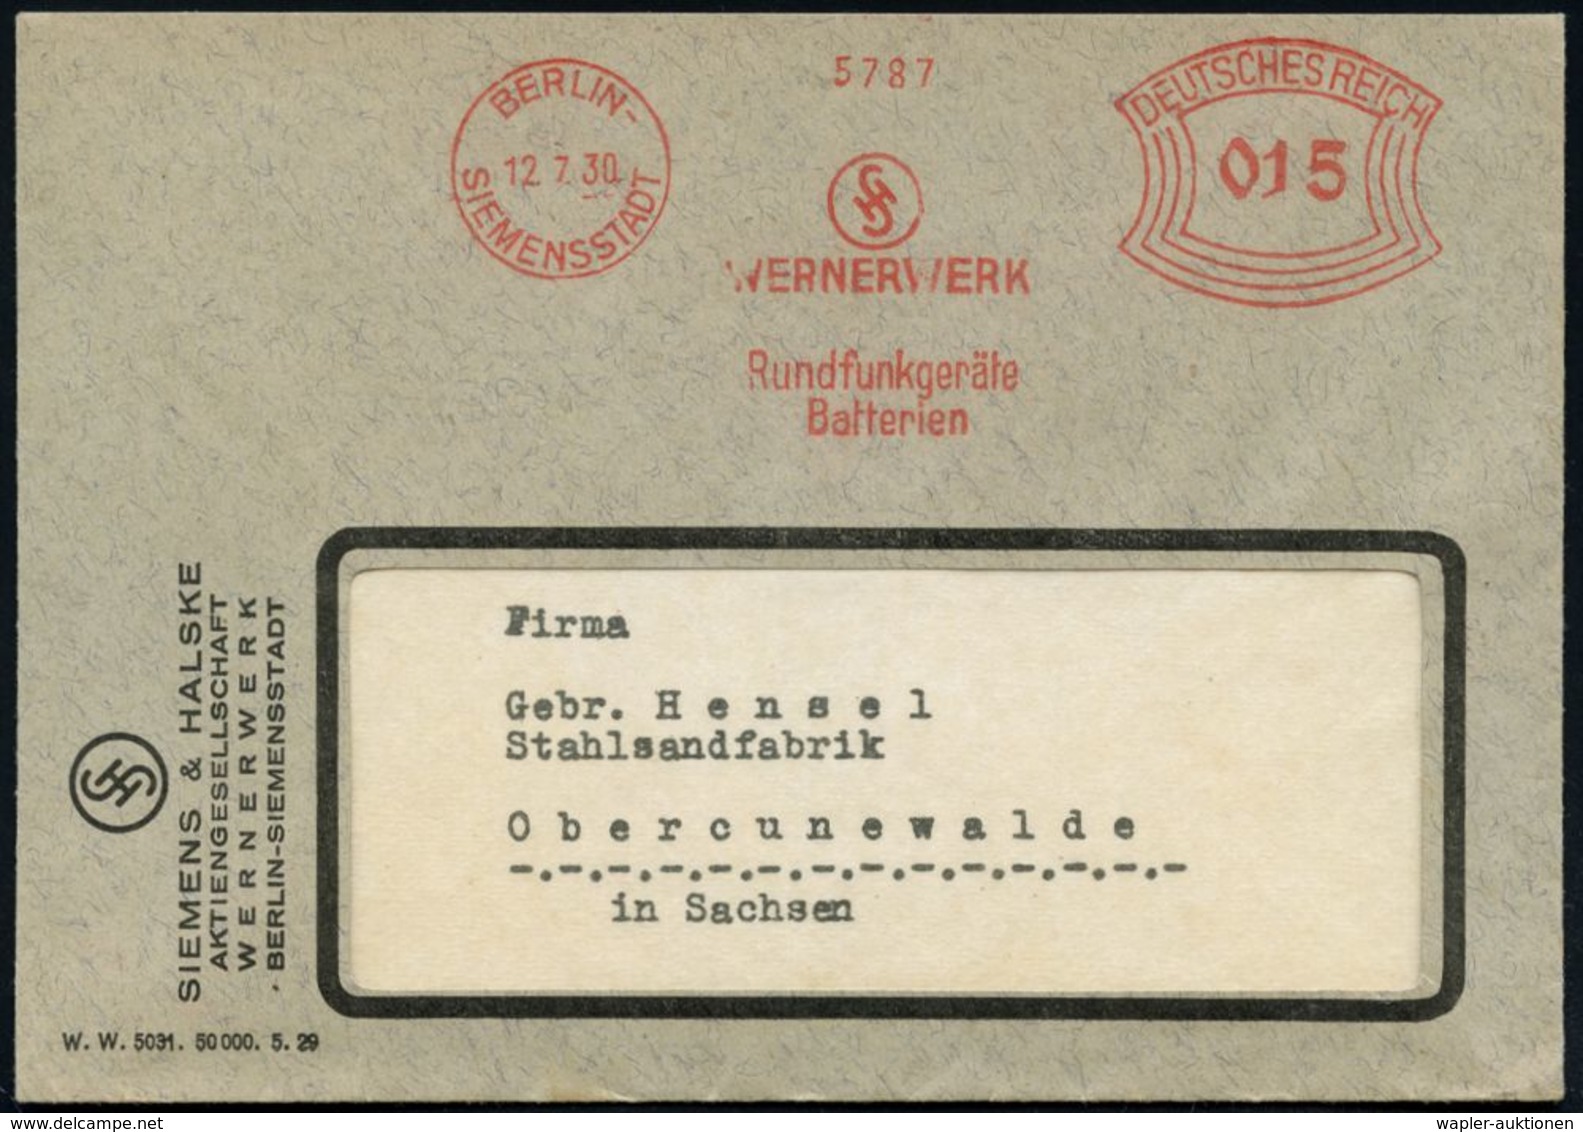 BERLIN-/ SIEMENSSTADT/ WERNERWERK/ Rundfunkgeräte/ Batterien 1930 (12.7.) AFS (Logo) Motivgleicher Firmen-Bf. (Dü.E-1BAh - Sin Clasificación